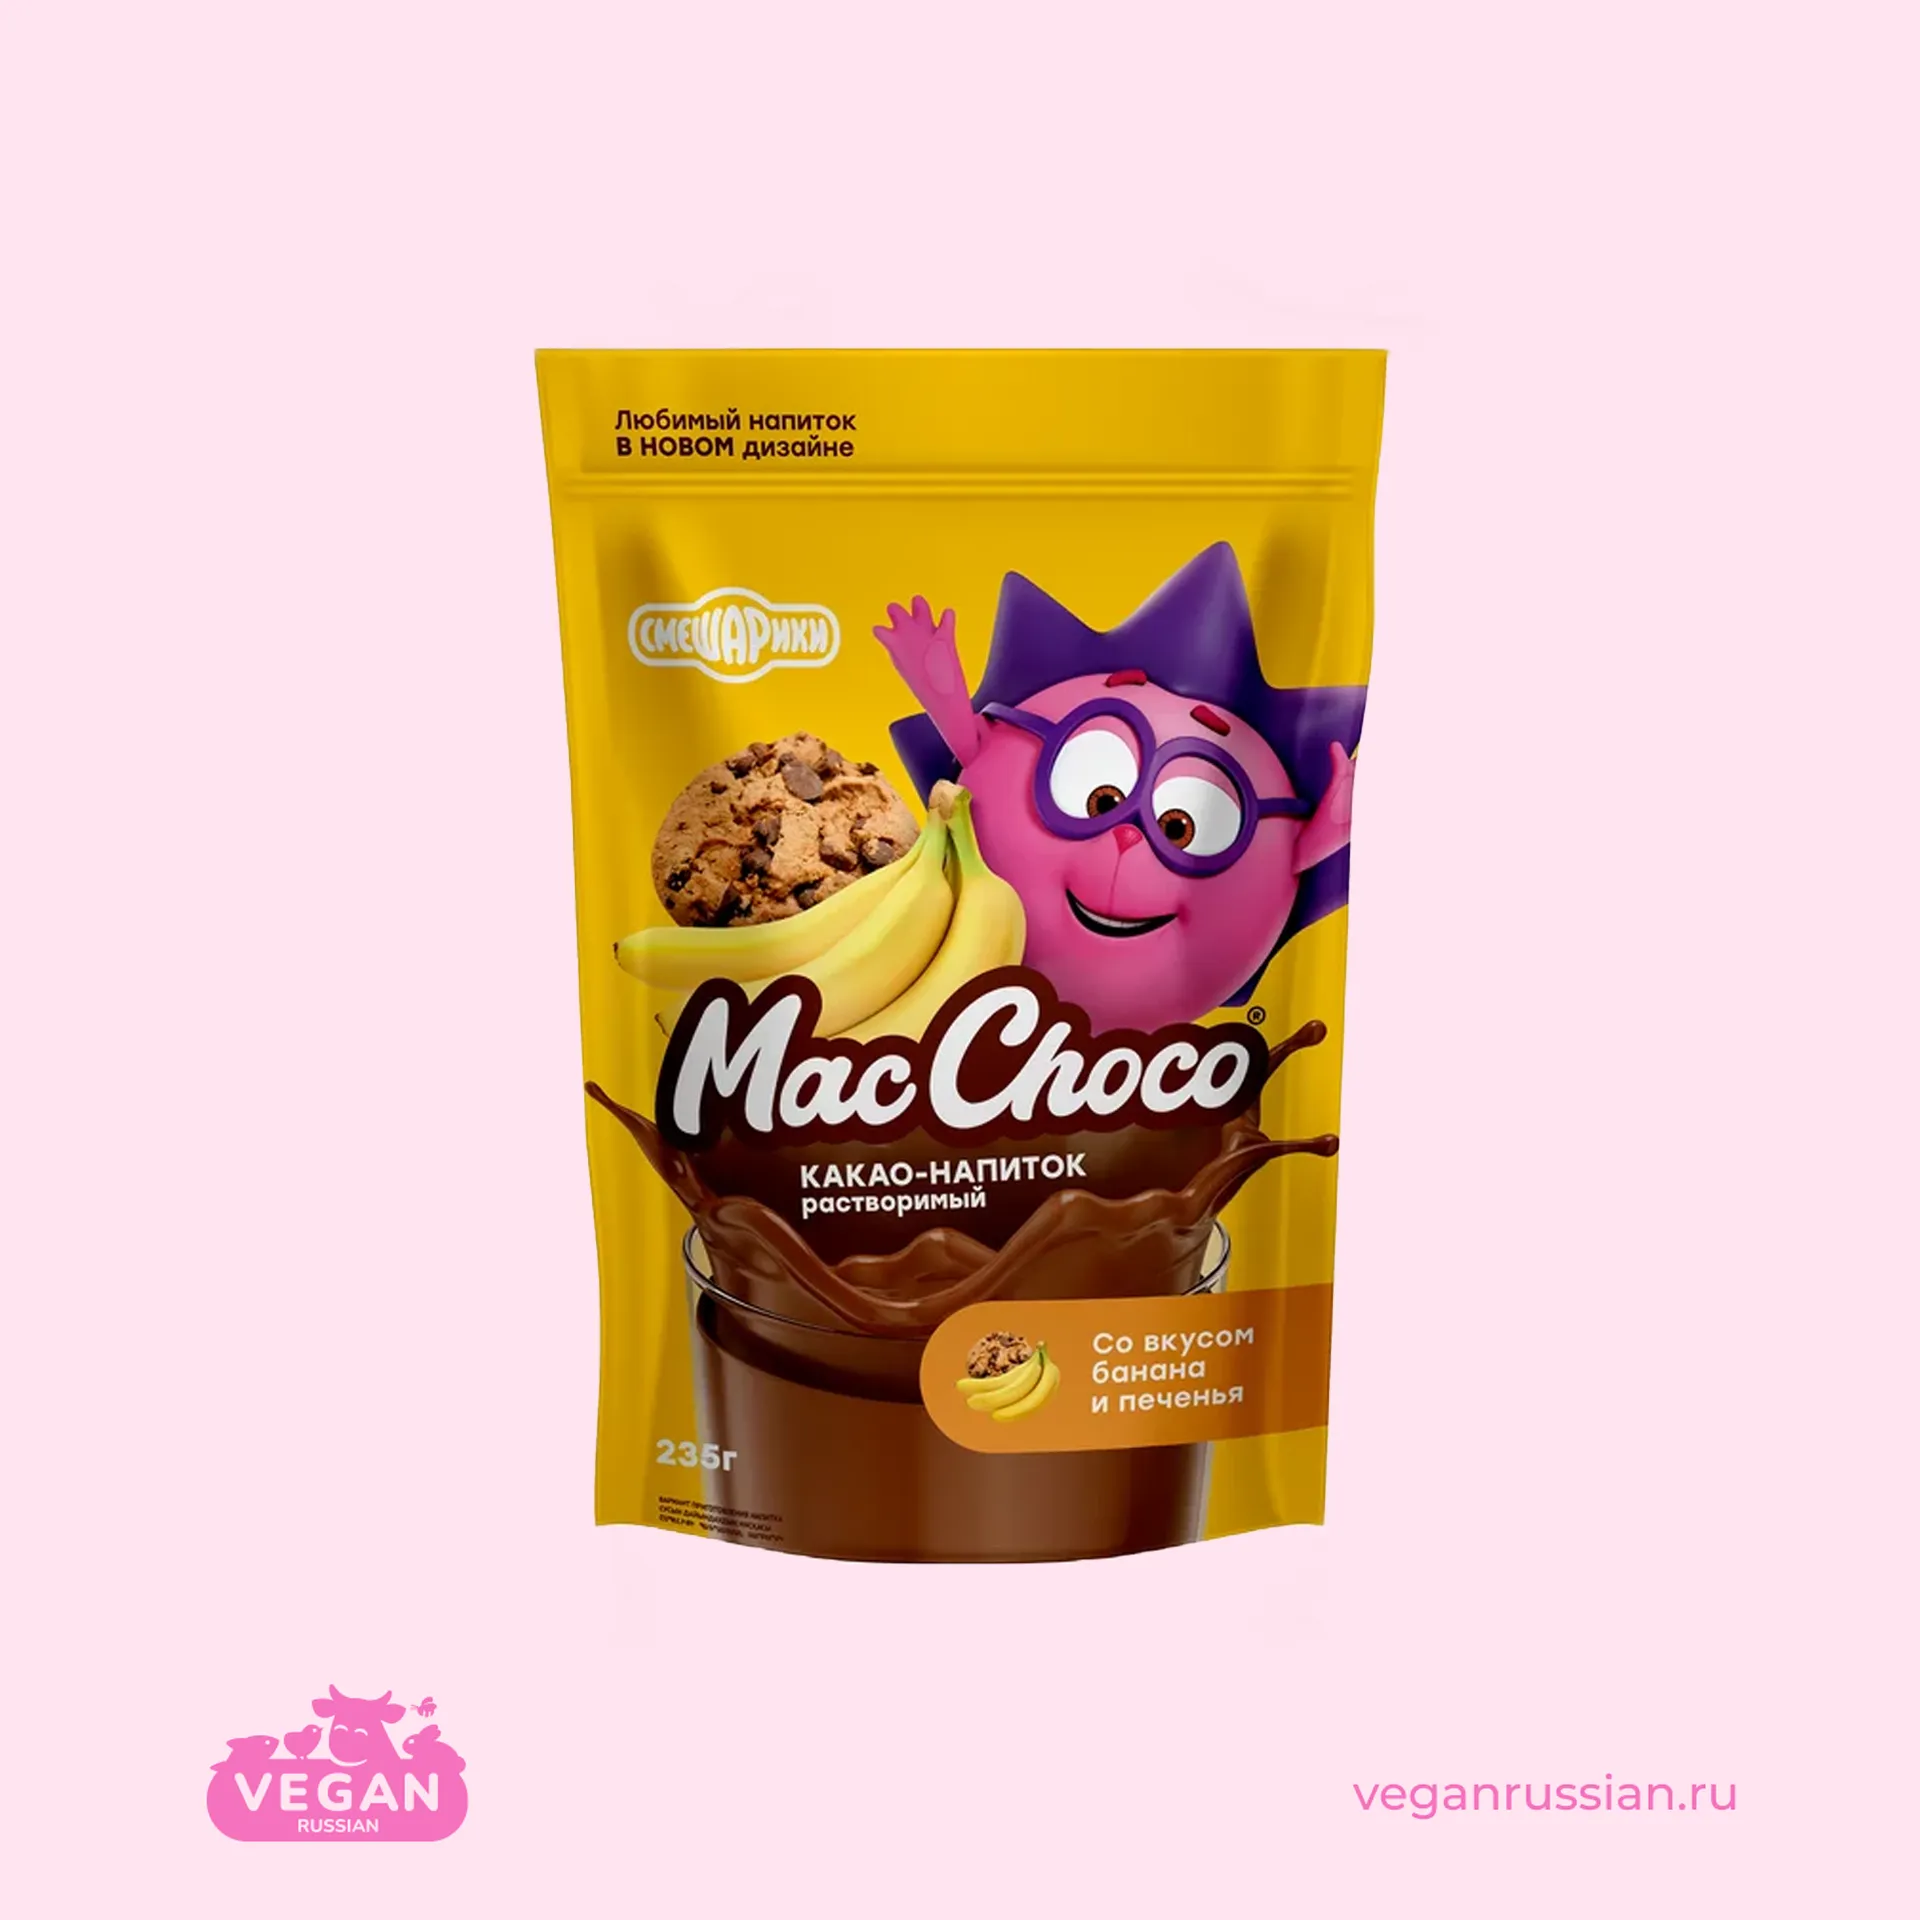 Какао-напиток со вкусом банана и печенья MacChoco 235 г